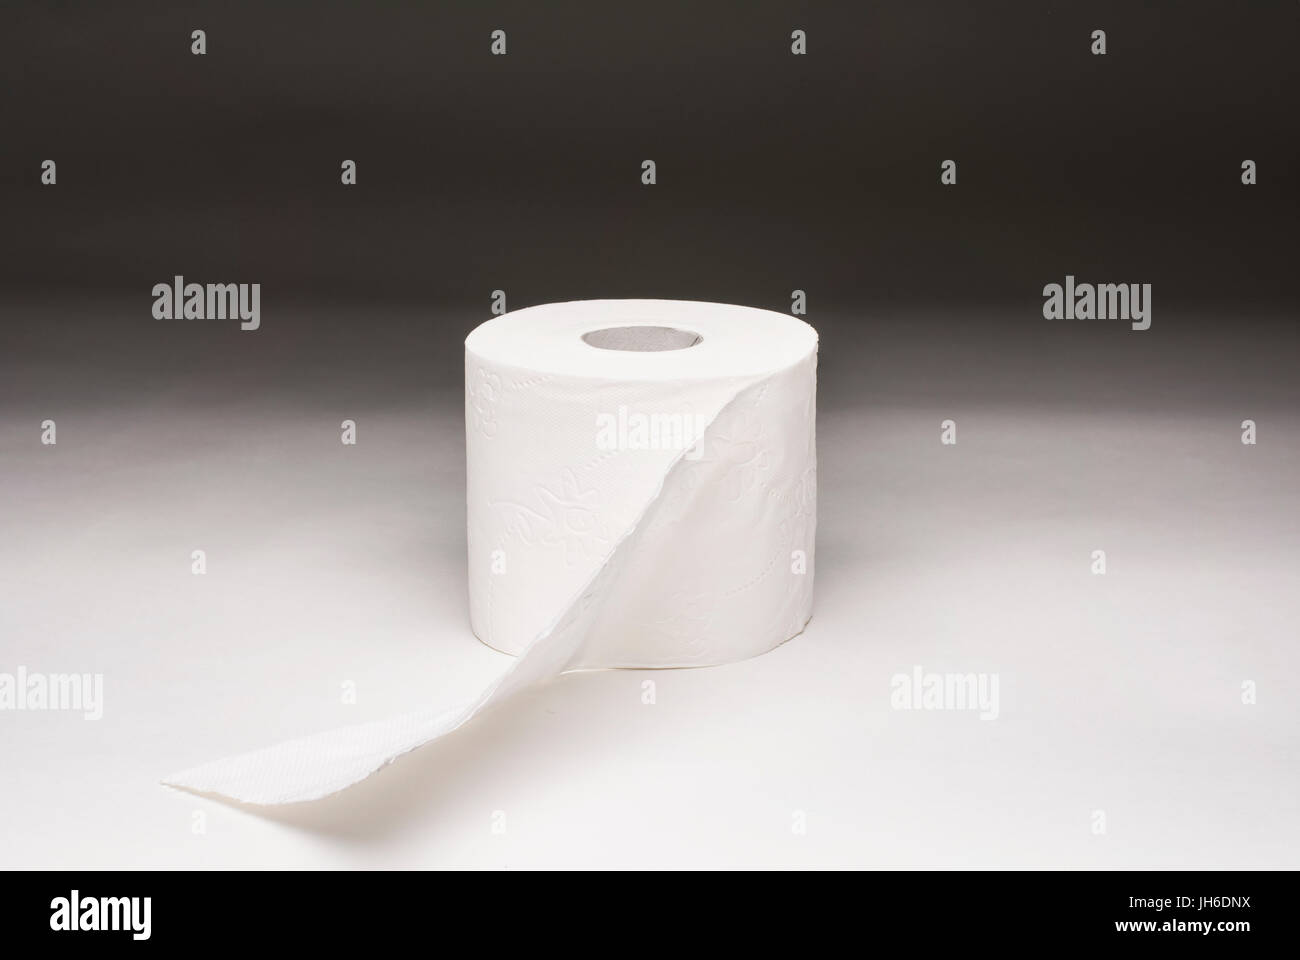 Eine WC-Papierrolle auf einem abgestuften Hintergrund fotografiert Stockfoto